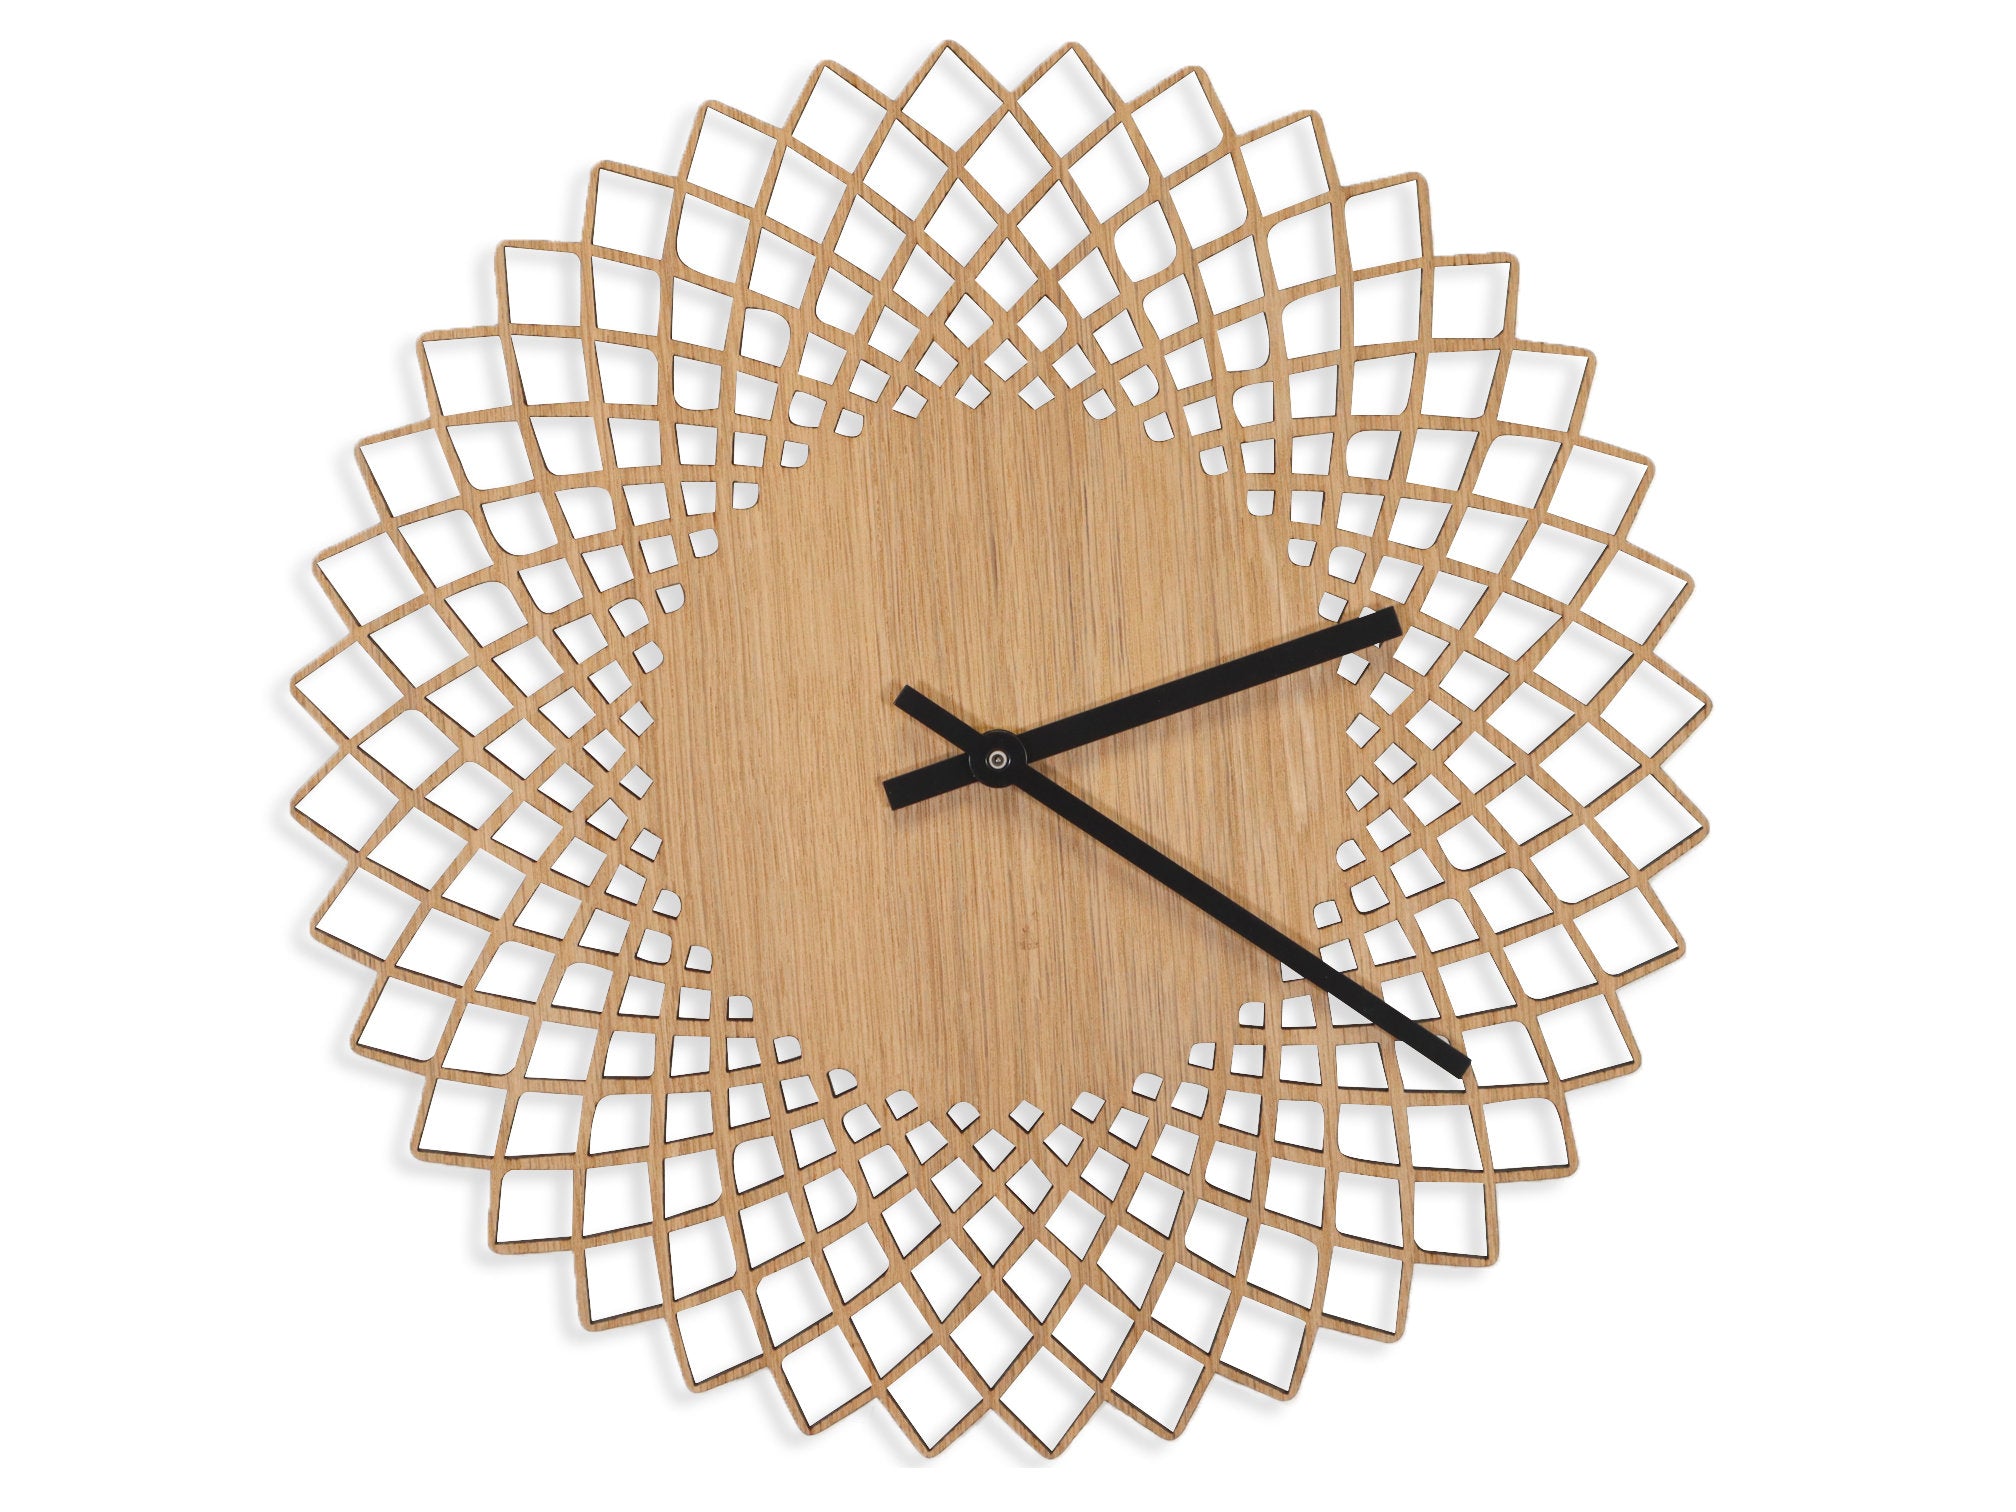 Minimalistic Wooden Geometric Wall Clock - Spiral Design